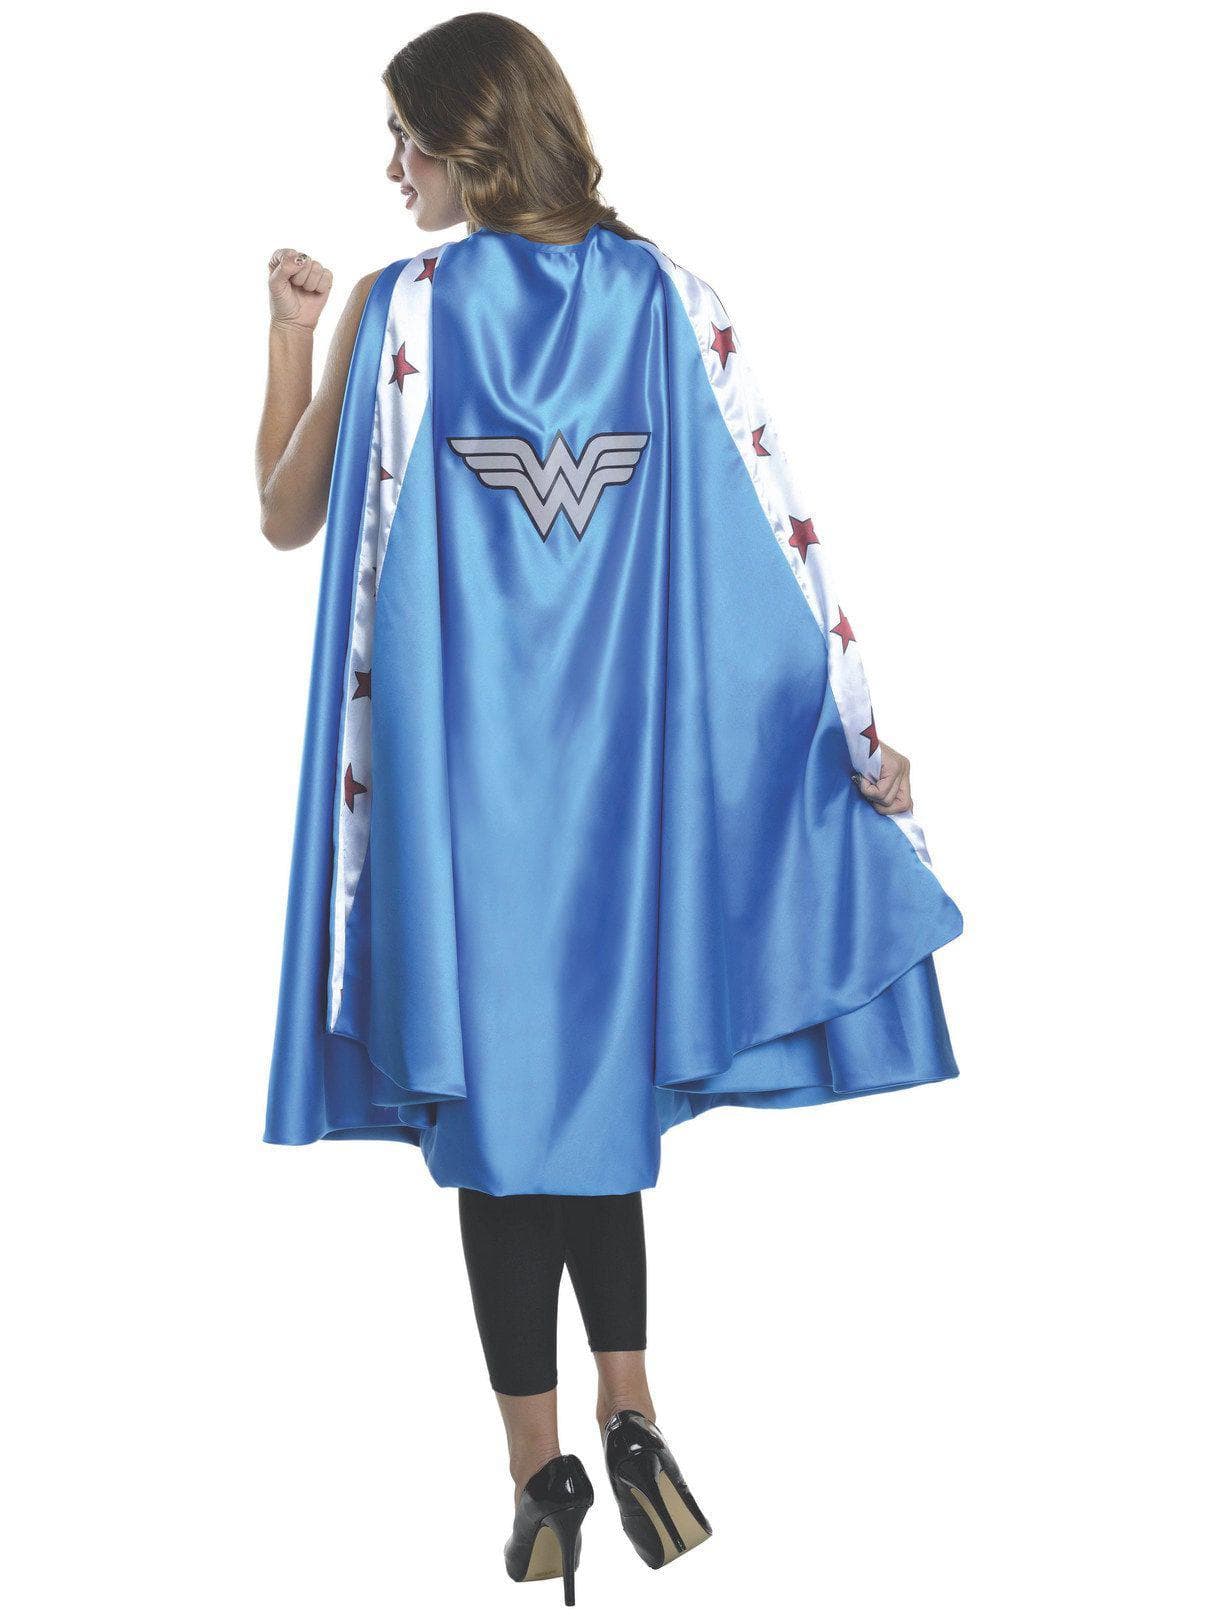 Women's Long Blue Wonder Woman Cape - costumes.com